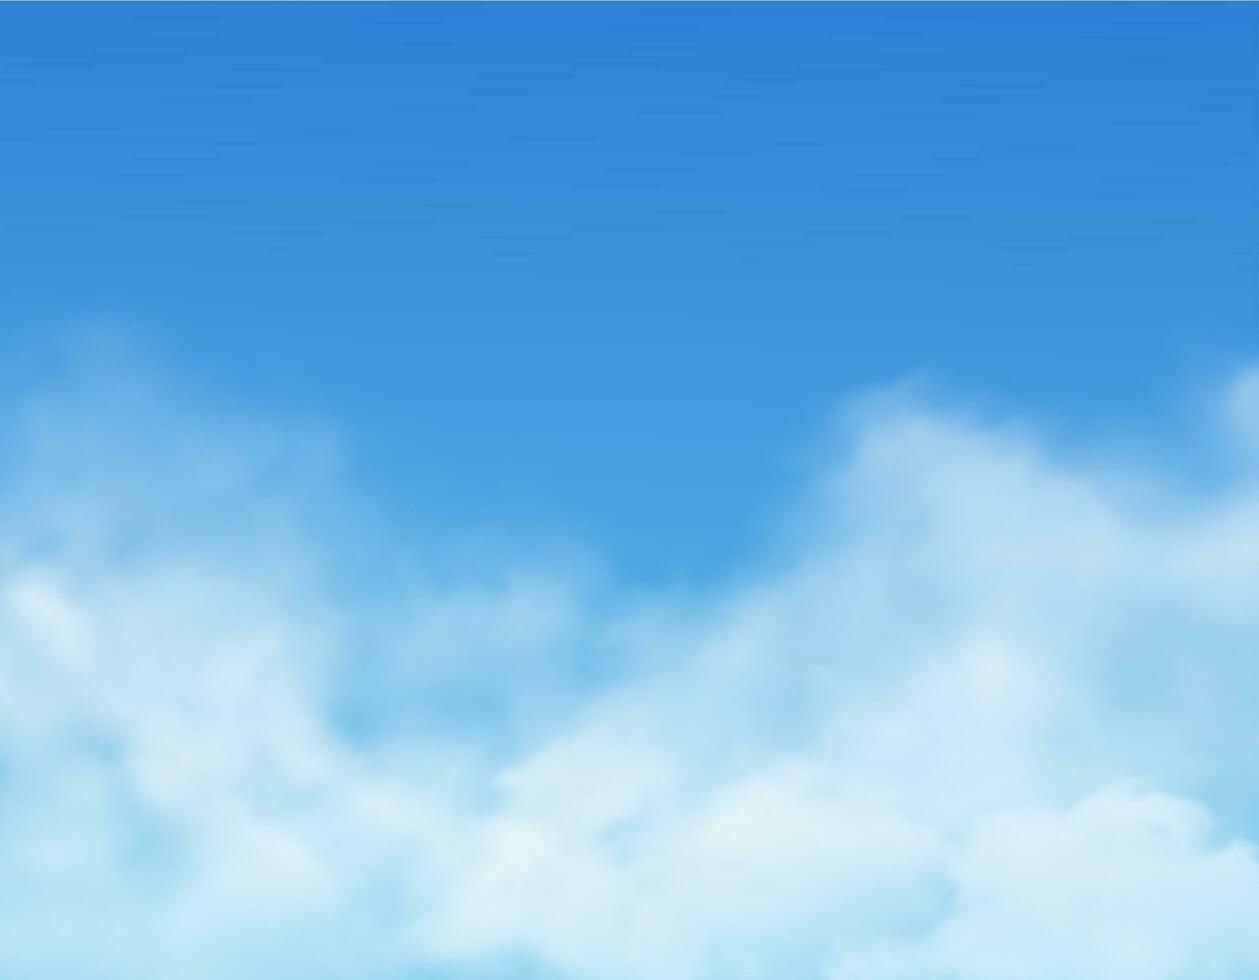 Himmel und Wolken, Blau realistisch wolkig Hintergrund vektor